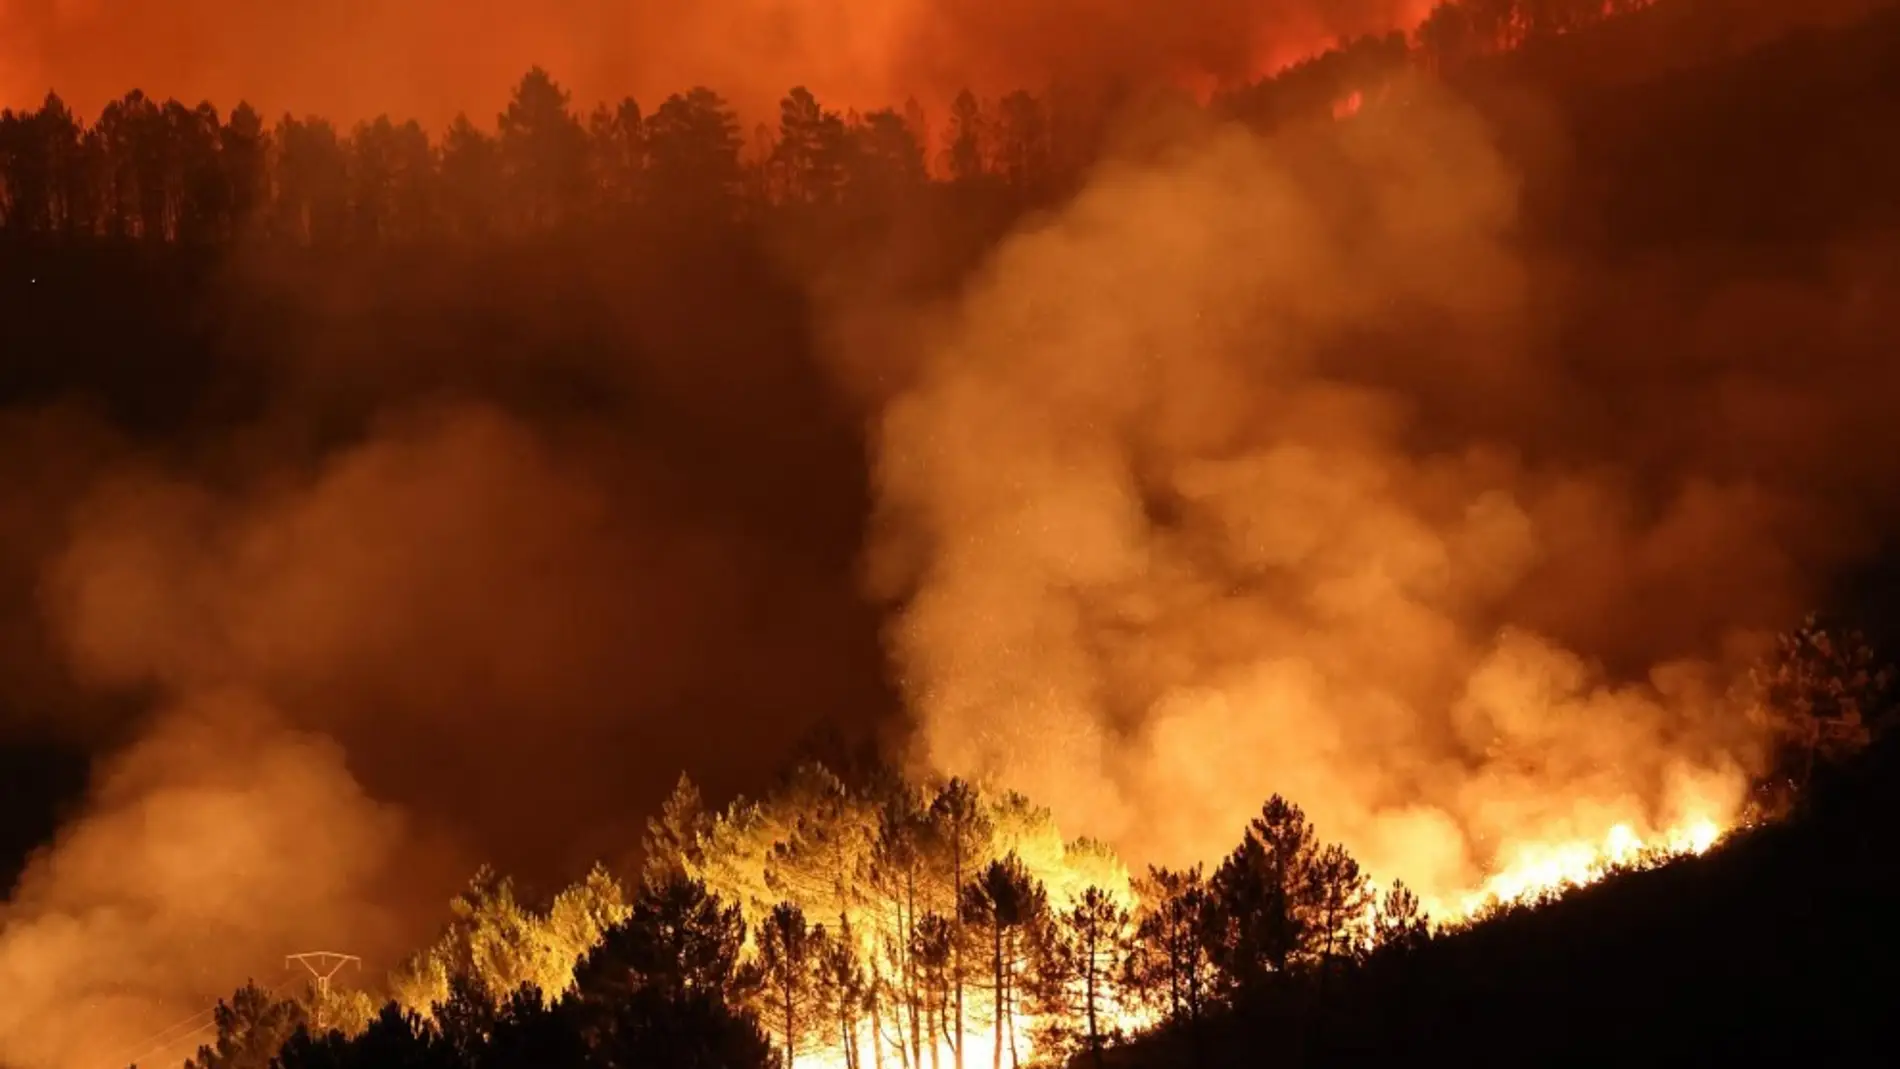 Vista del incendio que arrasa los alrededores de la localidad de Campobecerros, Ourense